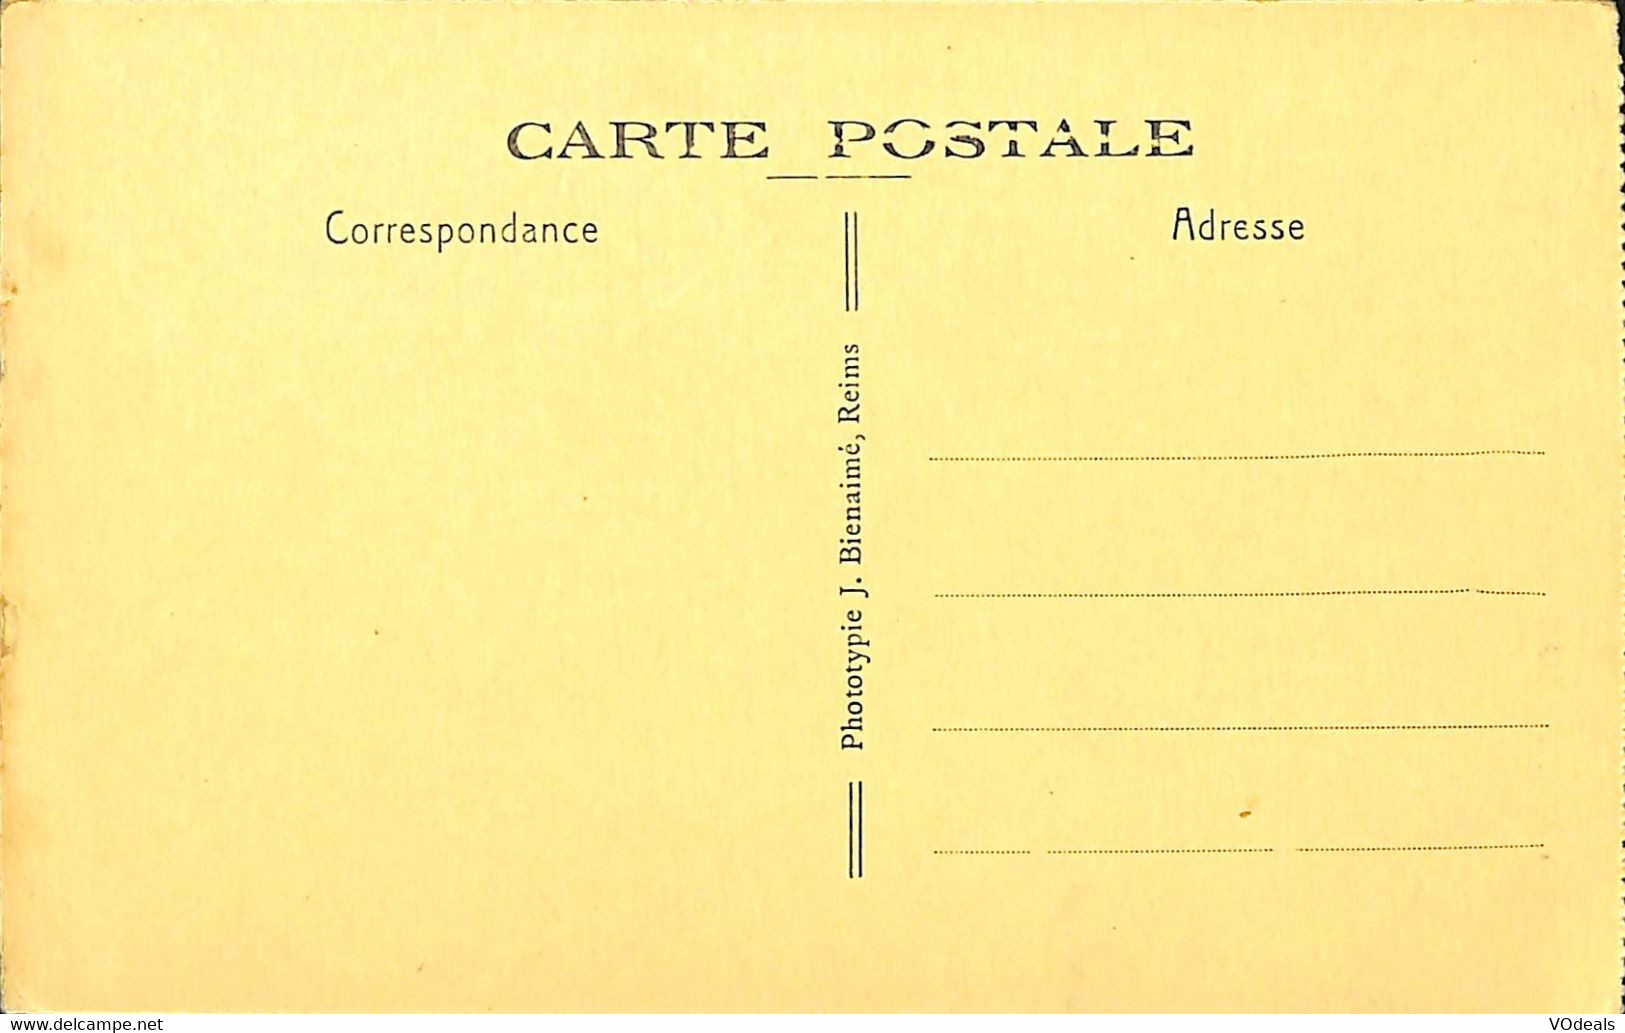 032 526 - CPA - France - Eglise - lot de 5 cartes différentes